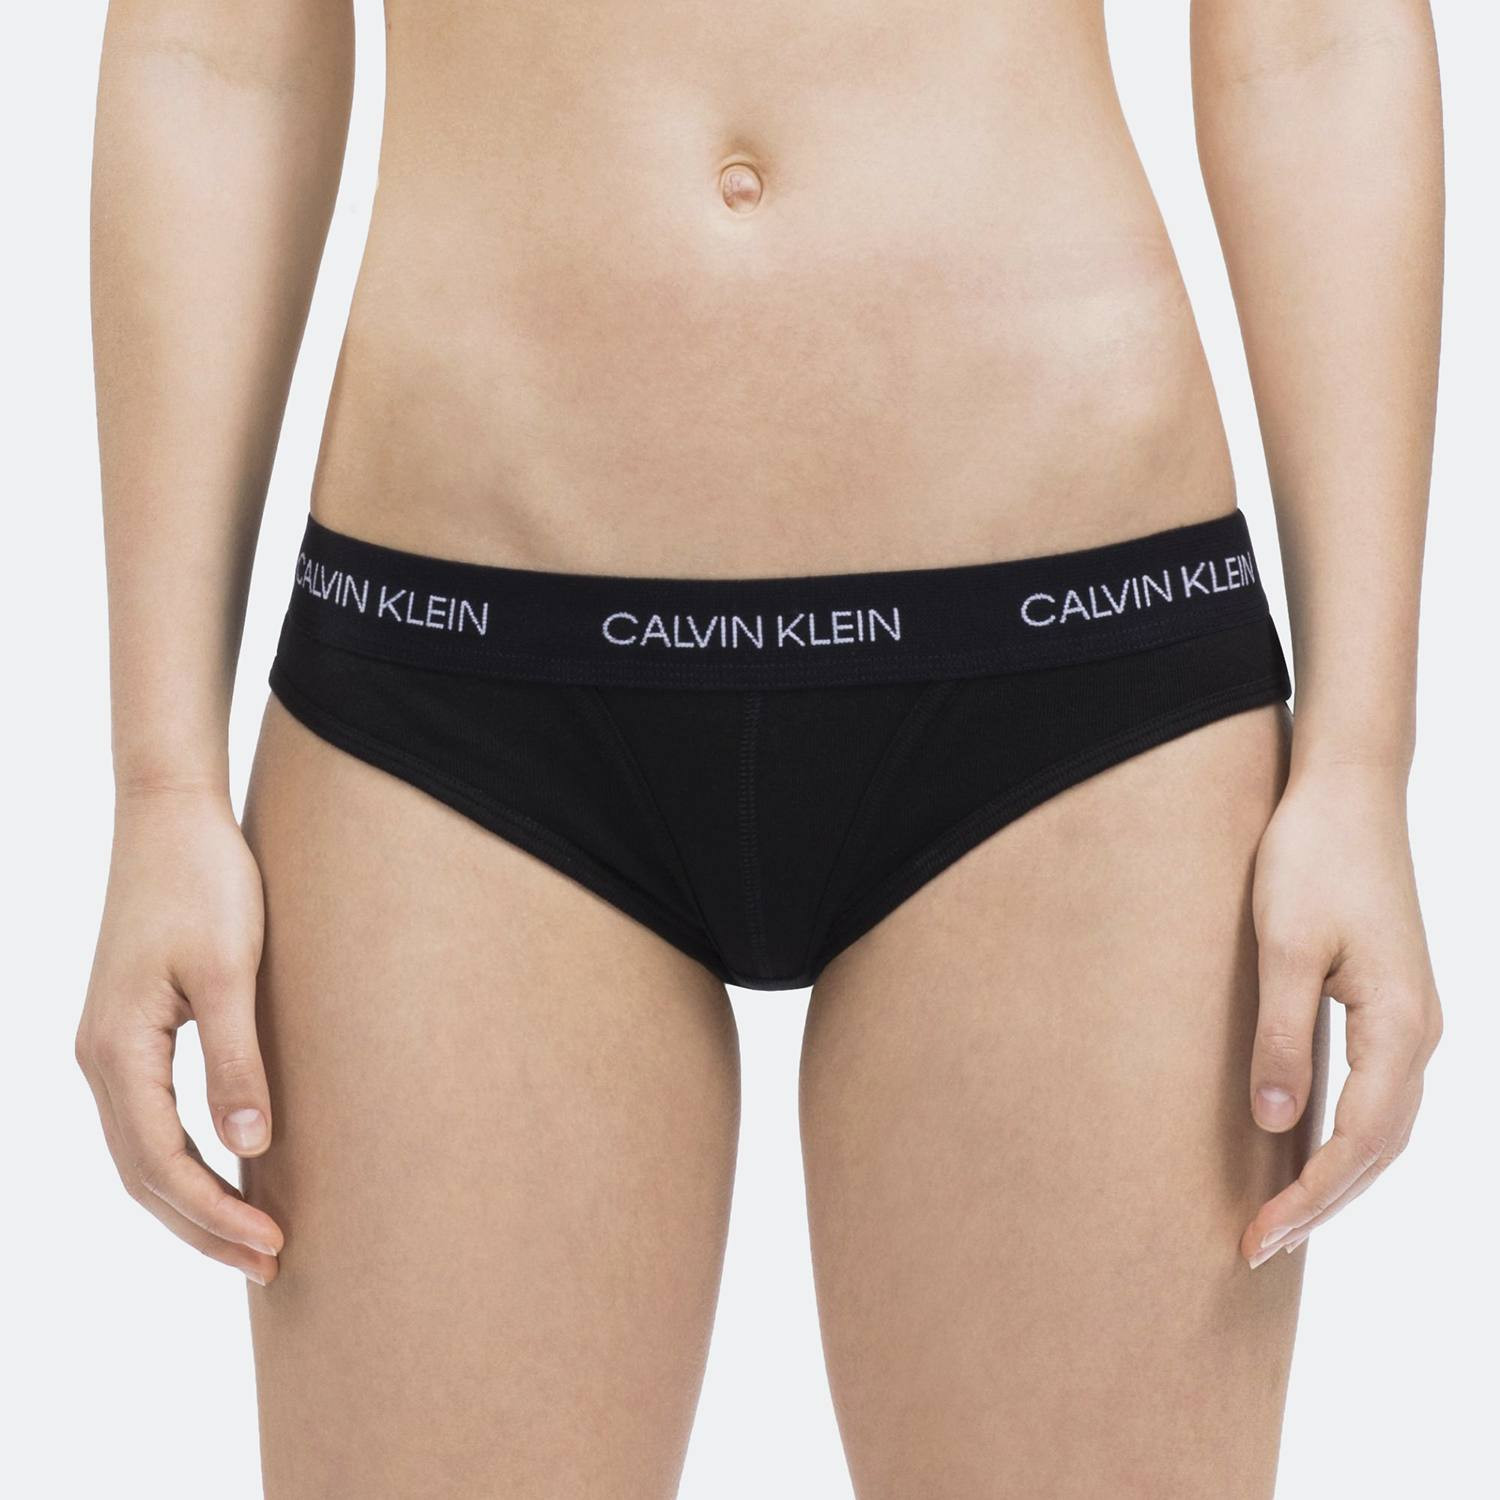 Calvin Klein Women’S Underwear - Γυναικείο Εσώρουχο (9000030052_1469)